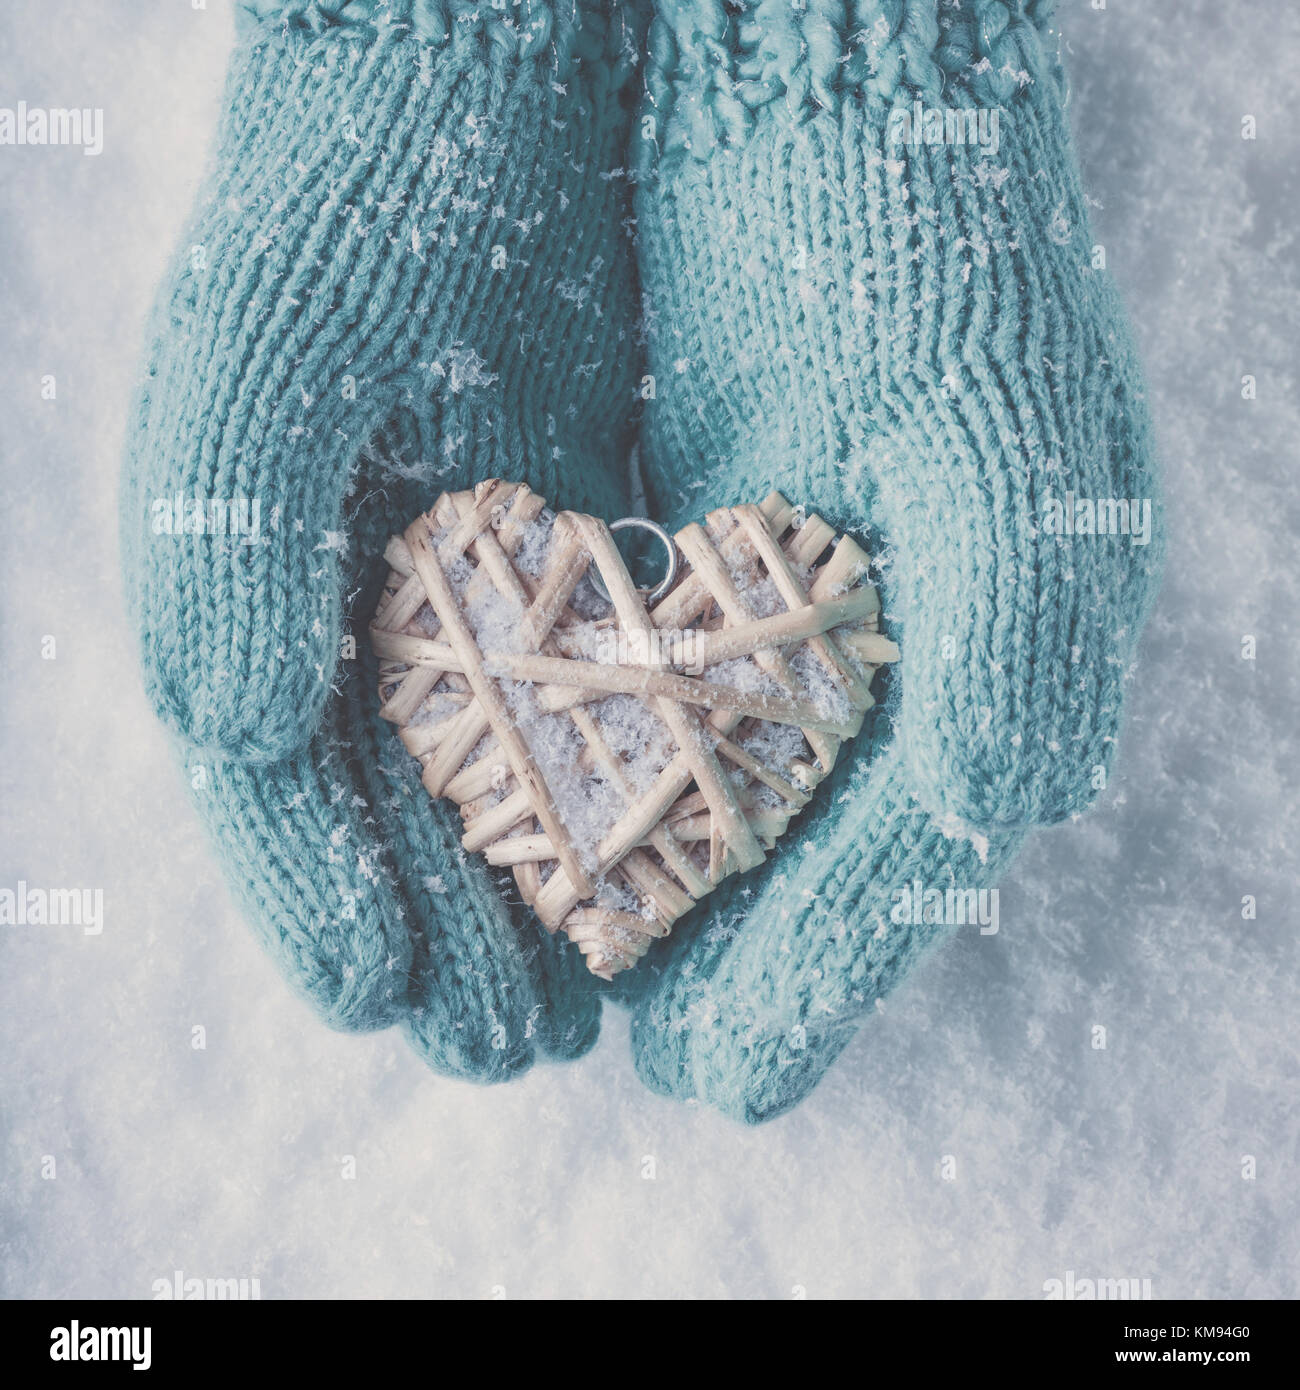 Frau Hände in Light teal Gestrickte Handschuhe halten einen schönen Herzen im Schnee Hintergrund. Liebe und st. Valentin Konzept. instagram Wirkung. Stockfoto